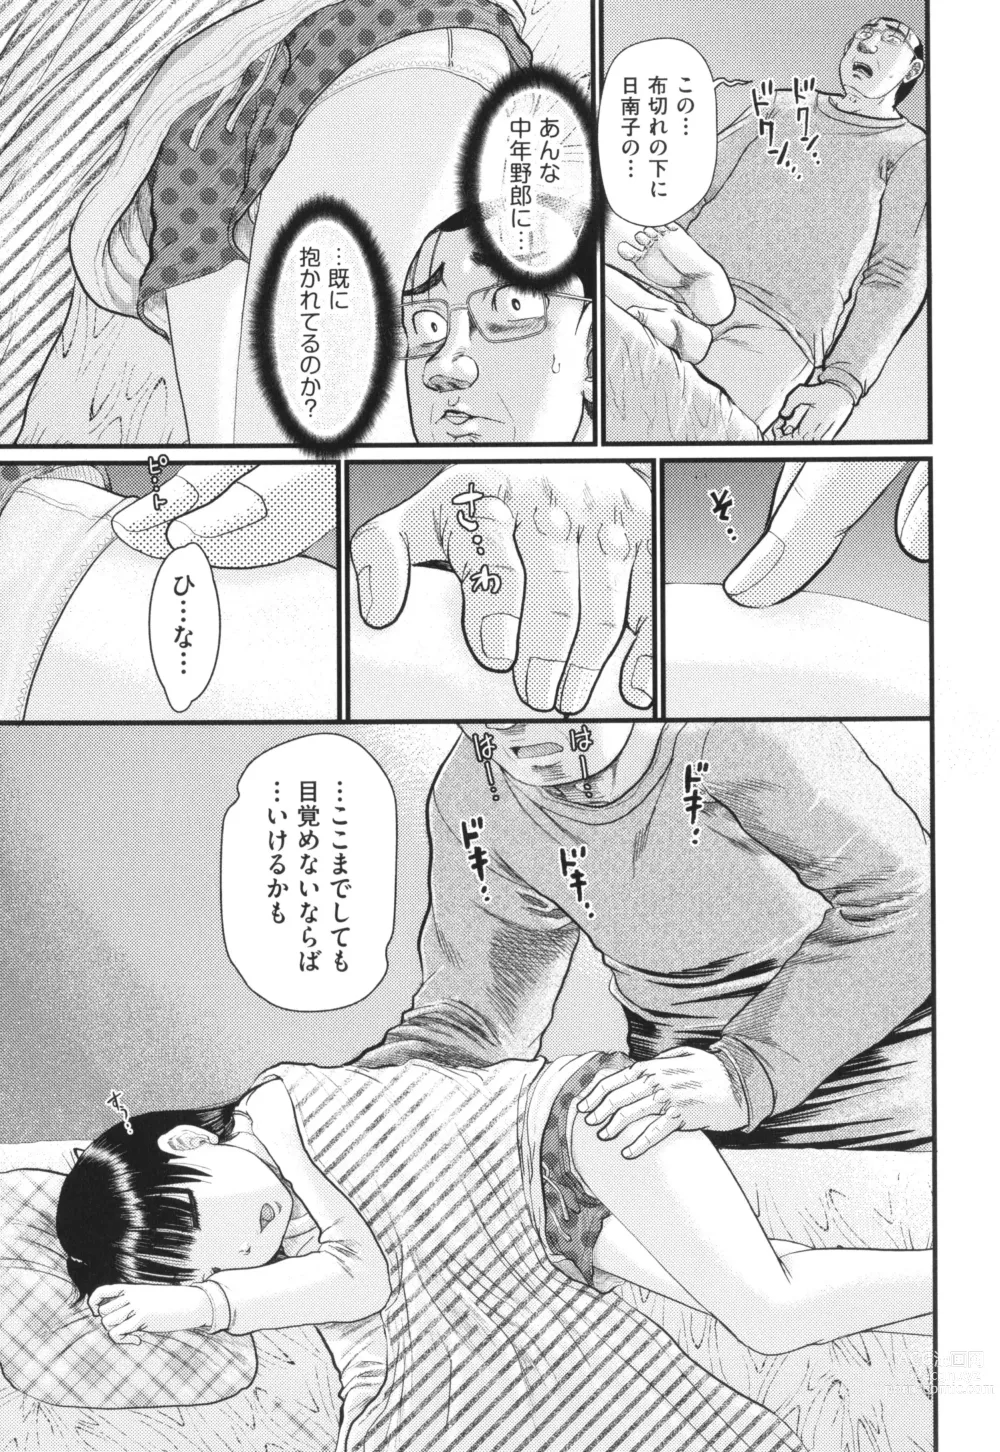 Page 16 of manga Akarui Kazoku Kyoujoku